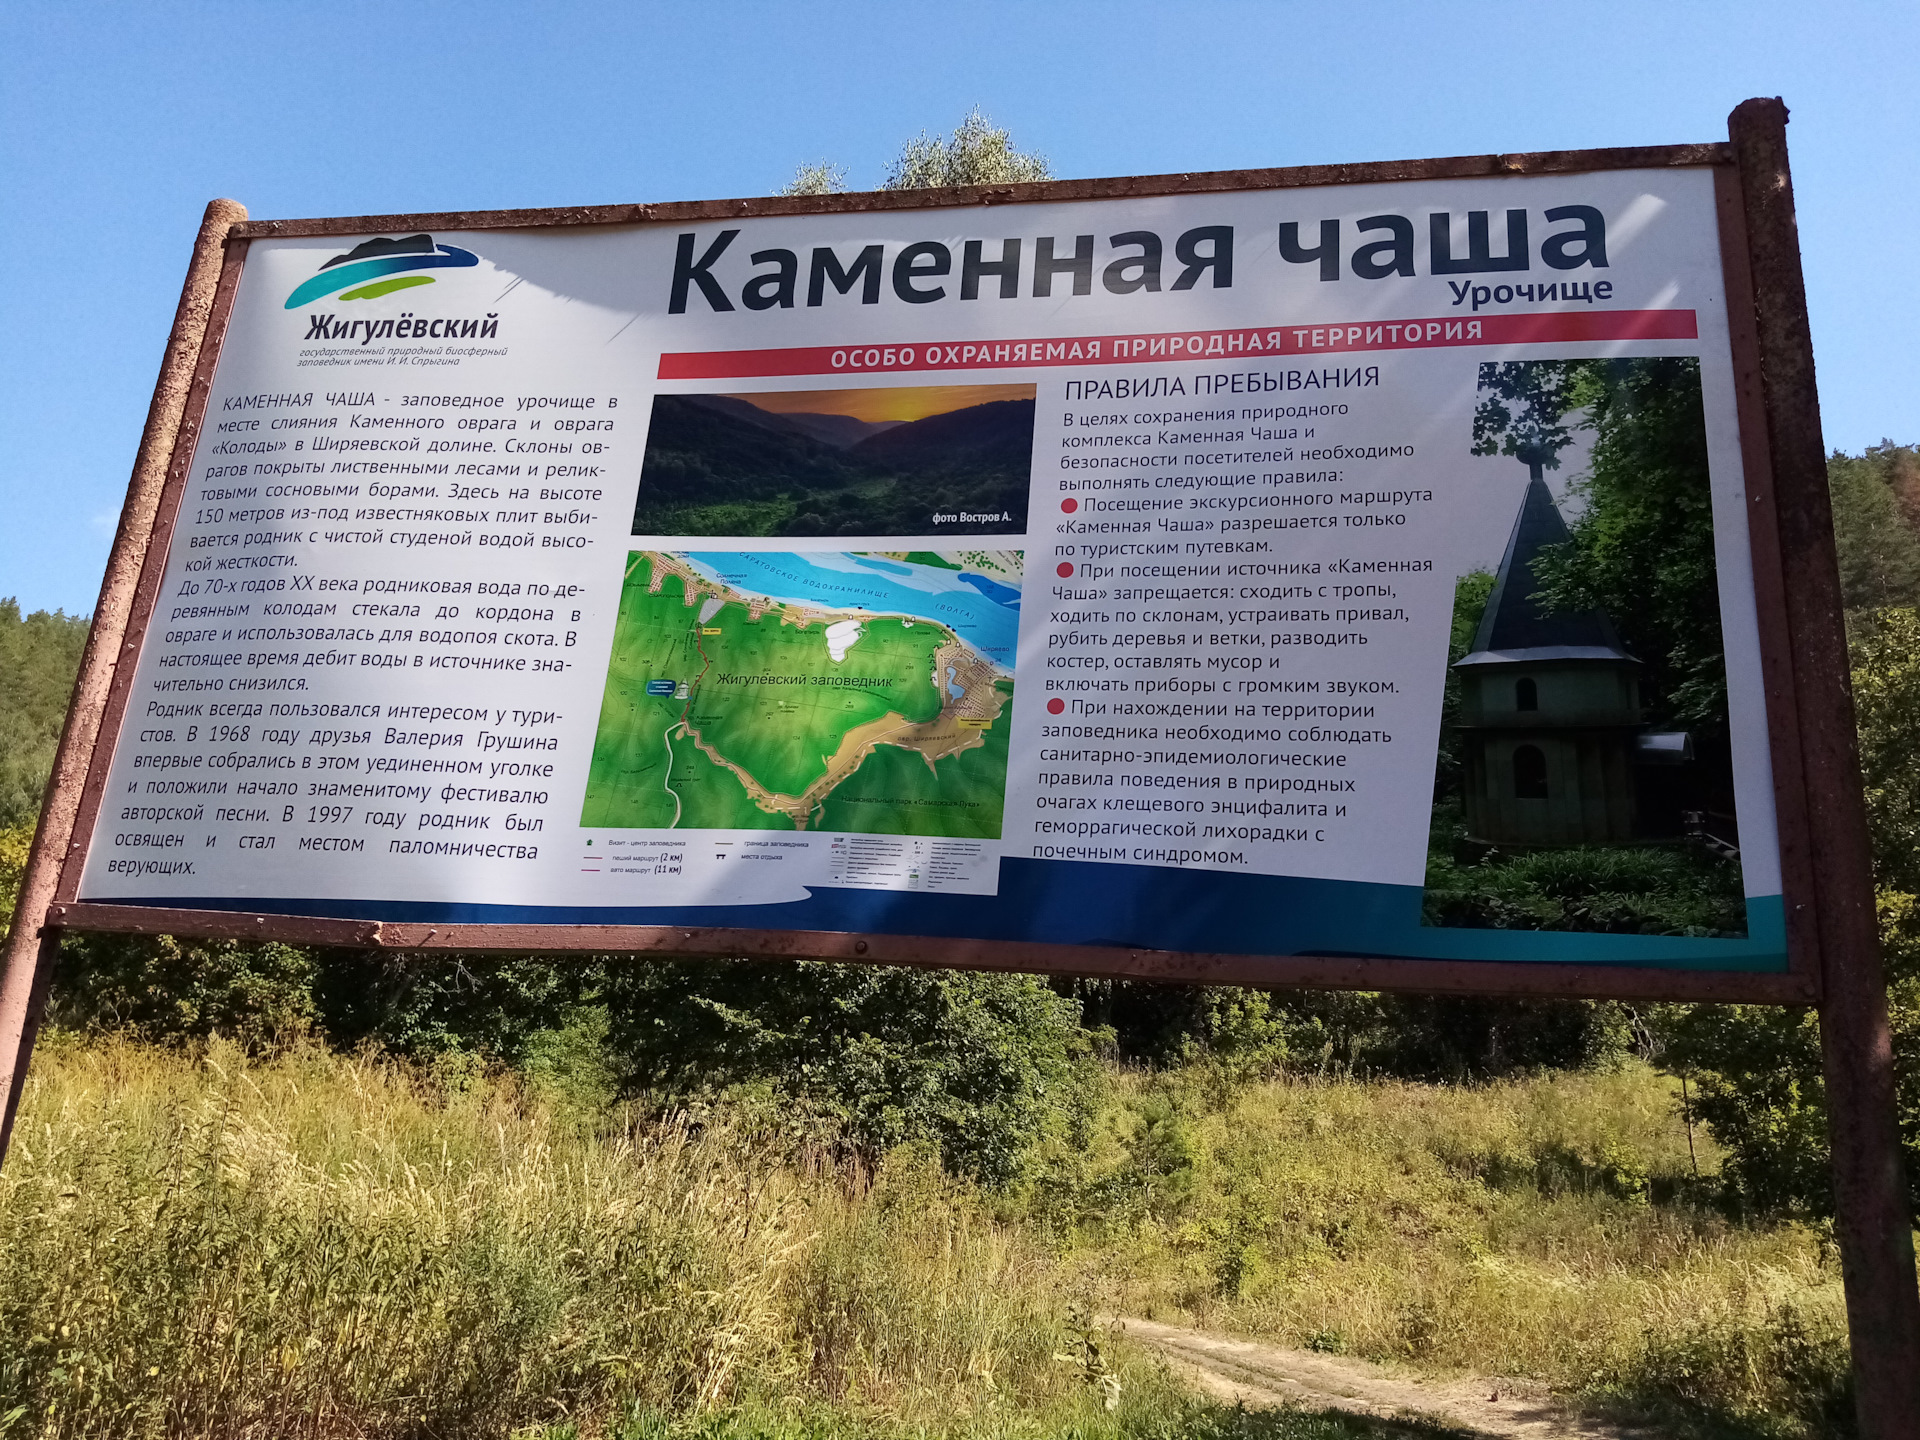 Сообщение о национальном парке Самарской области